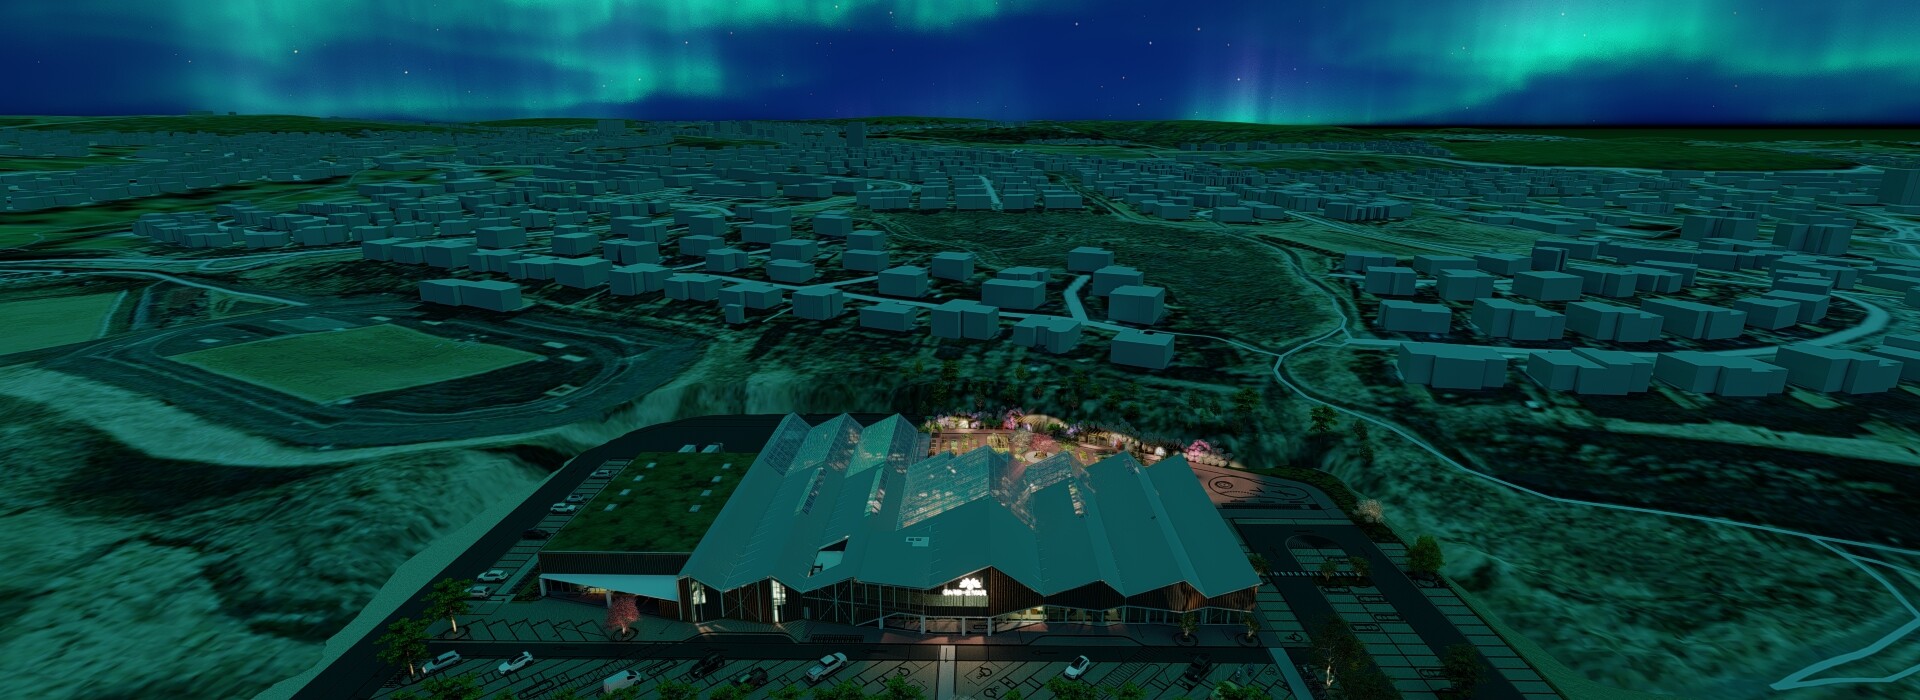 Garden center Gardheimar Reykjavik (Iceland) 2024